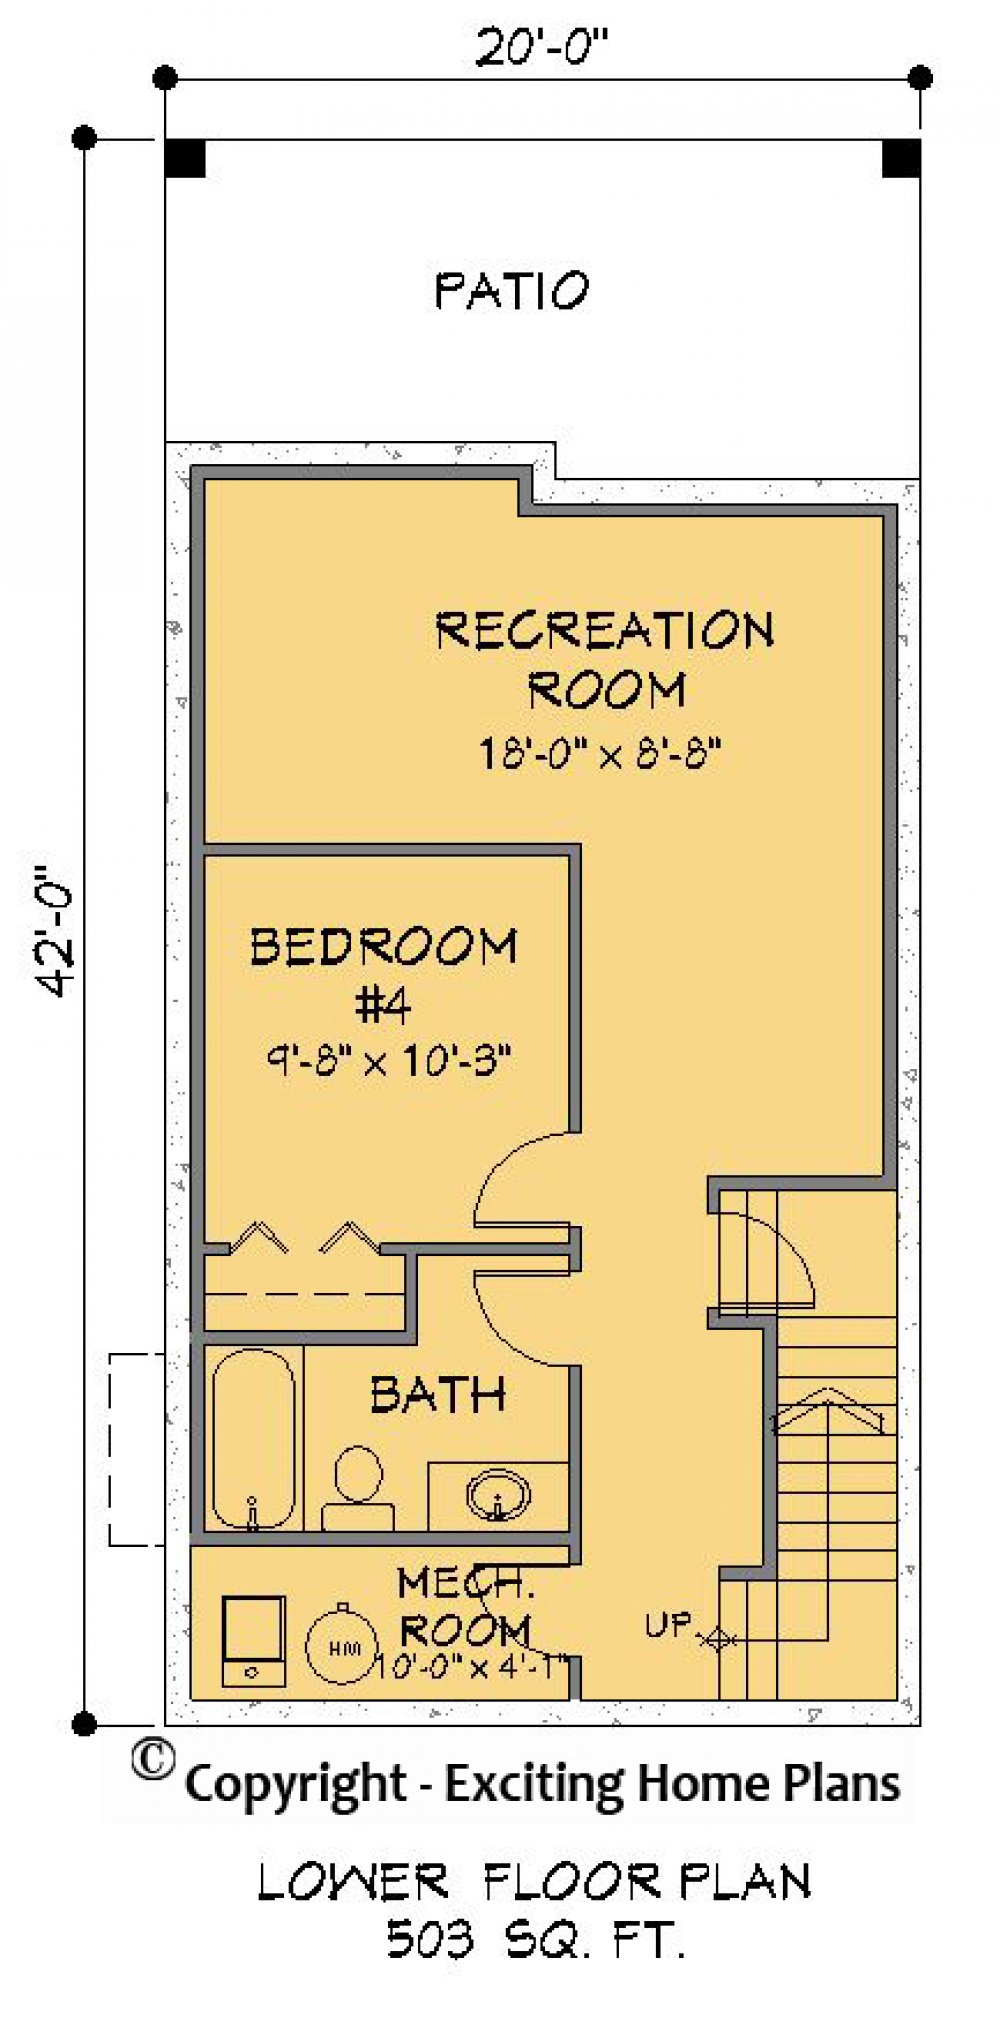 House Plan E1269-10 Lower Floor Plan